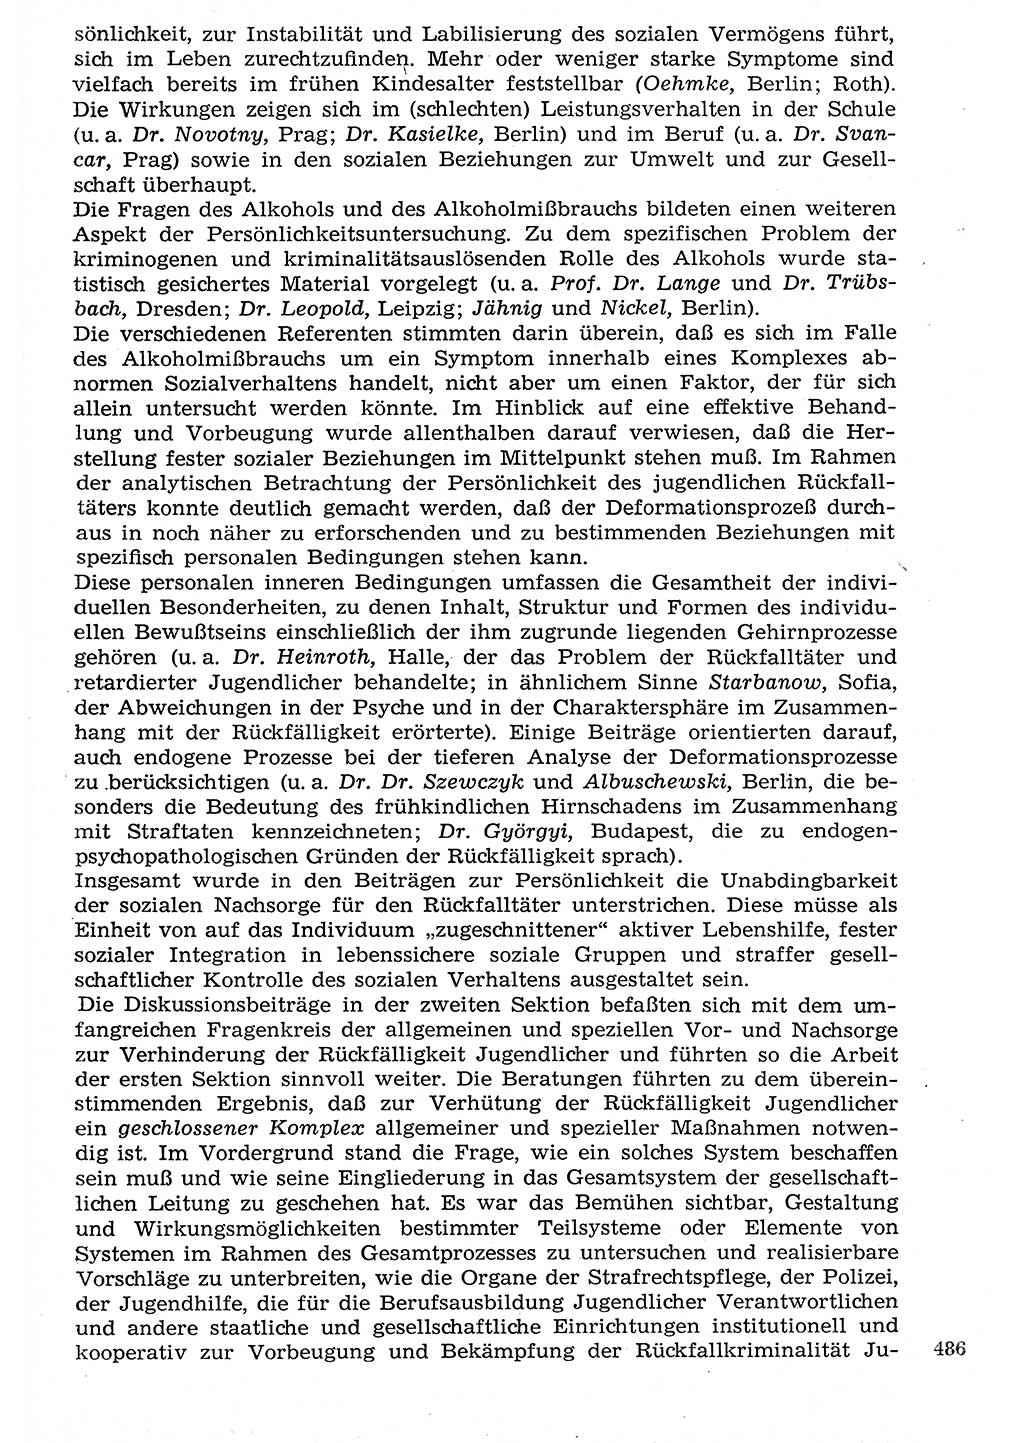 Staat und Recht (StuR), 17. Jahrgang [Deutsche Demokratische Republik (DDR)] 1968, Seite 486 (StuR DDR 1968, S. 486)